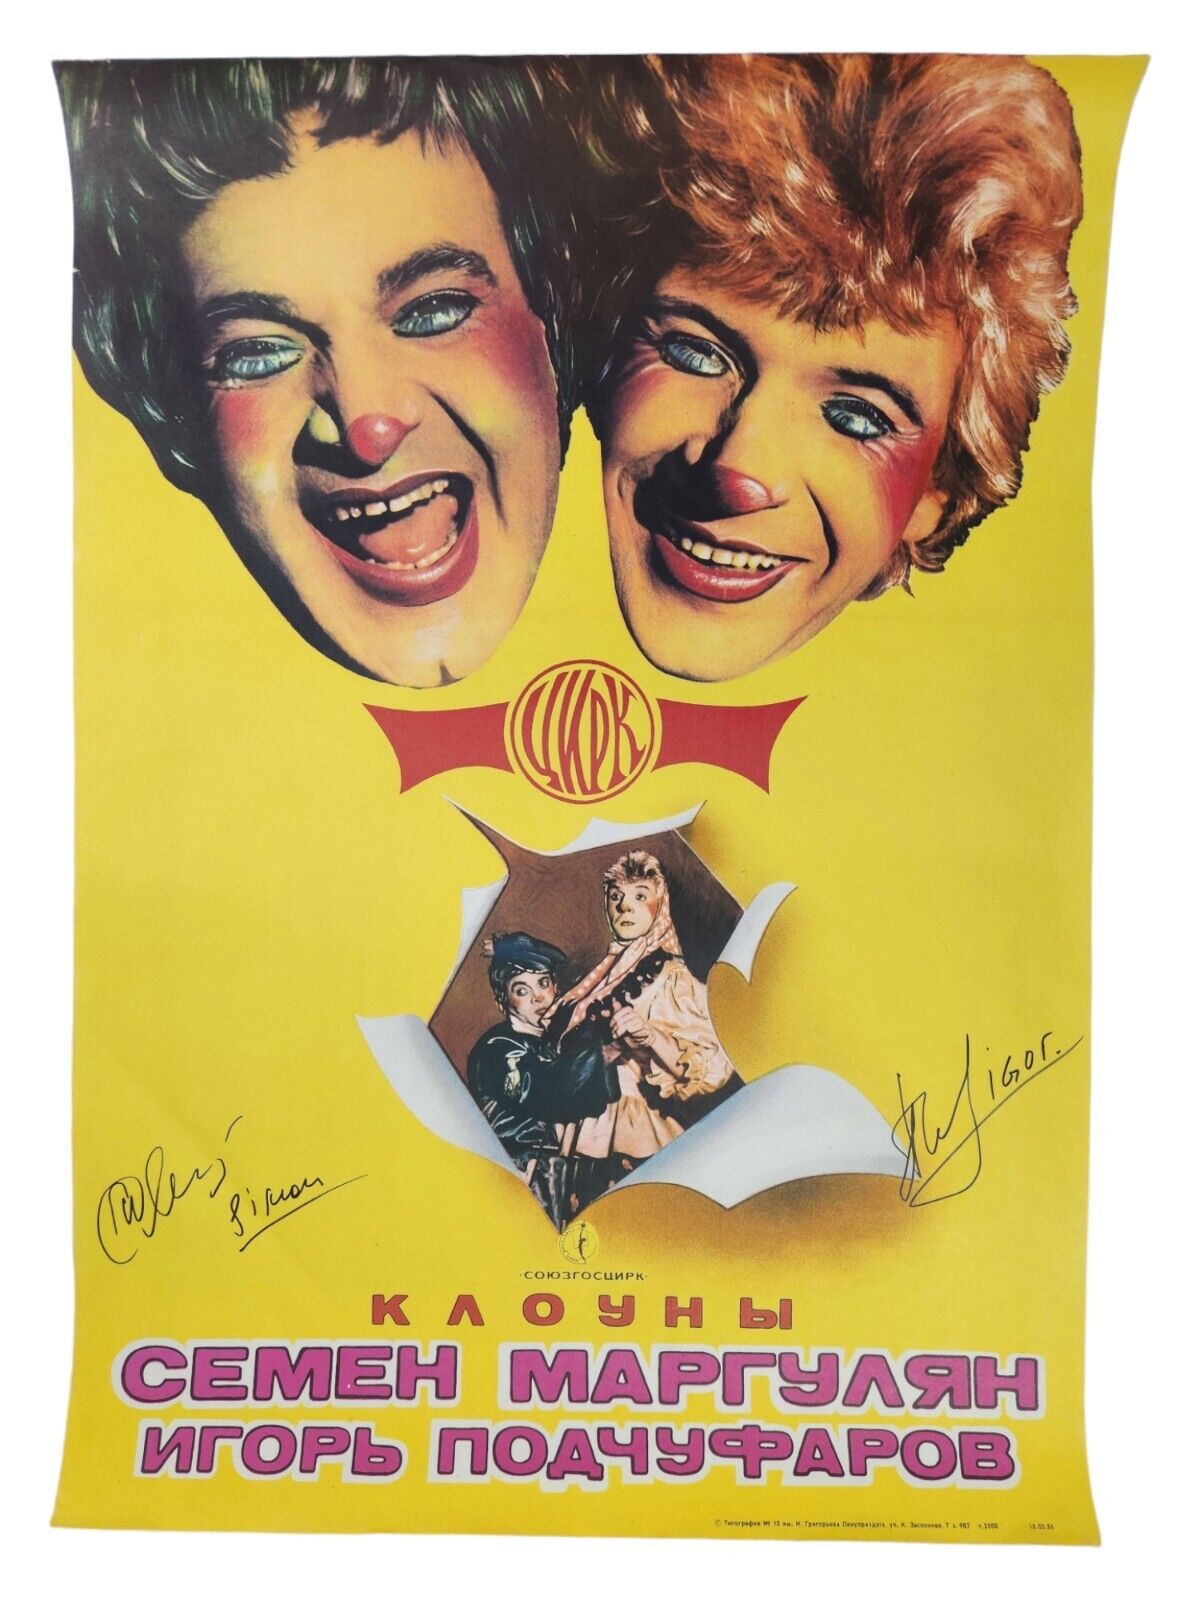 VTG \'86 Moscow Circus Poster Signed  SEMYON MARGULYAN & IGOR PODCHUFAROV 12-5-86